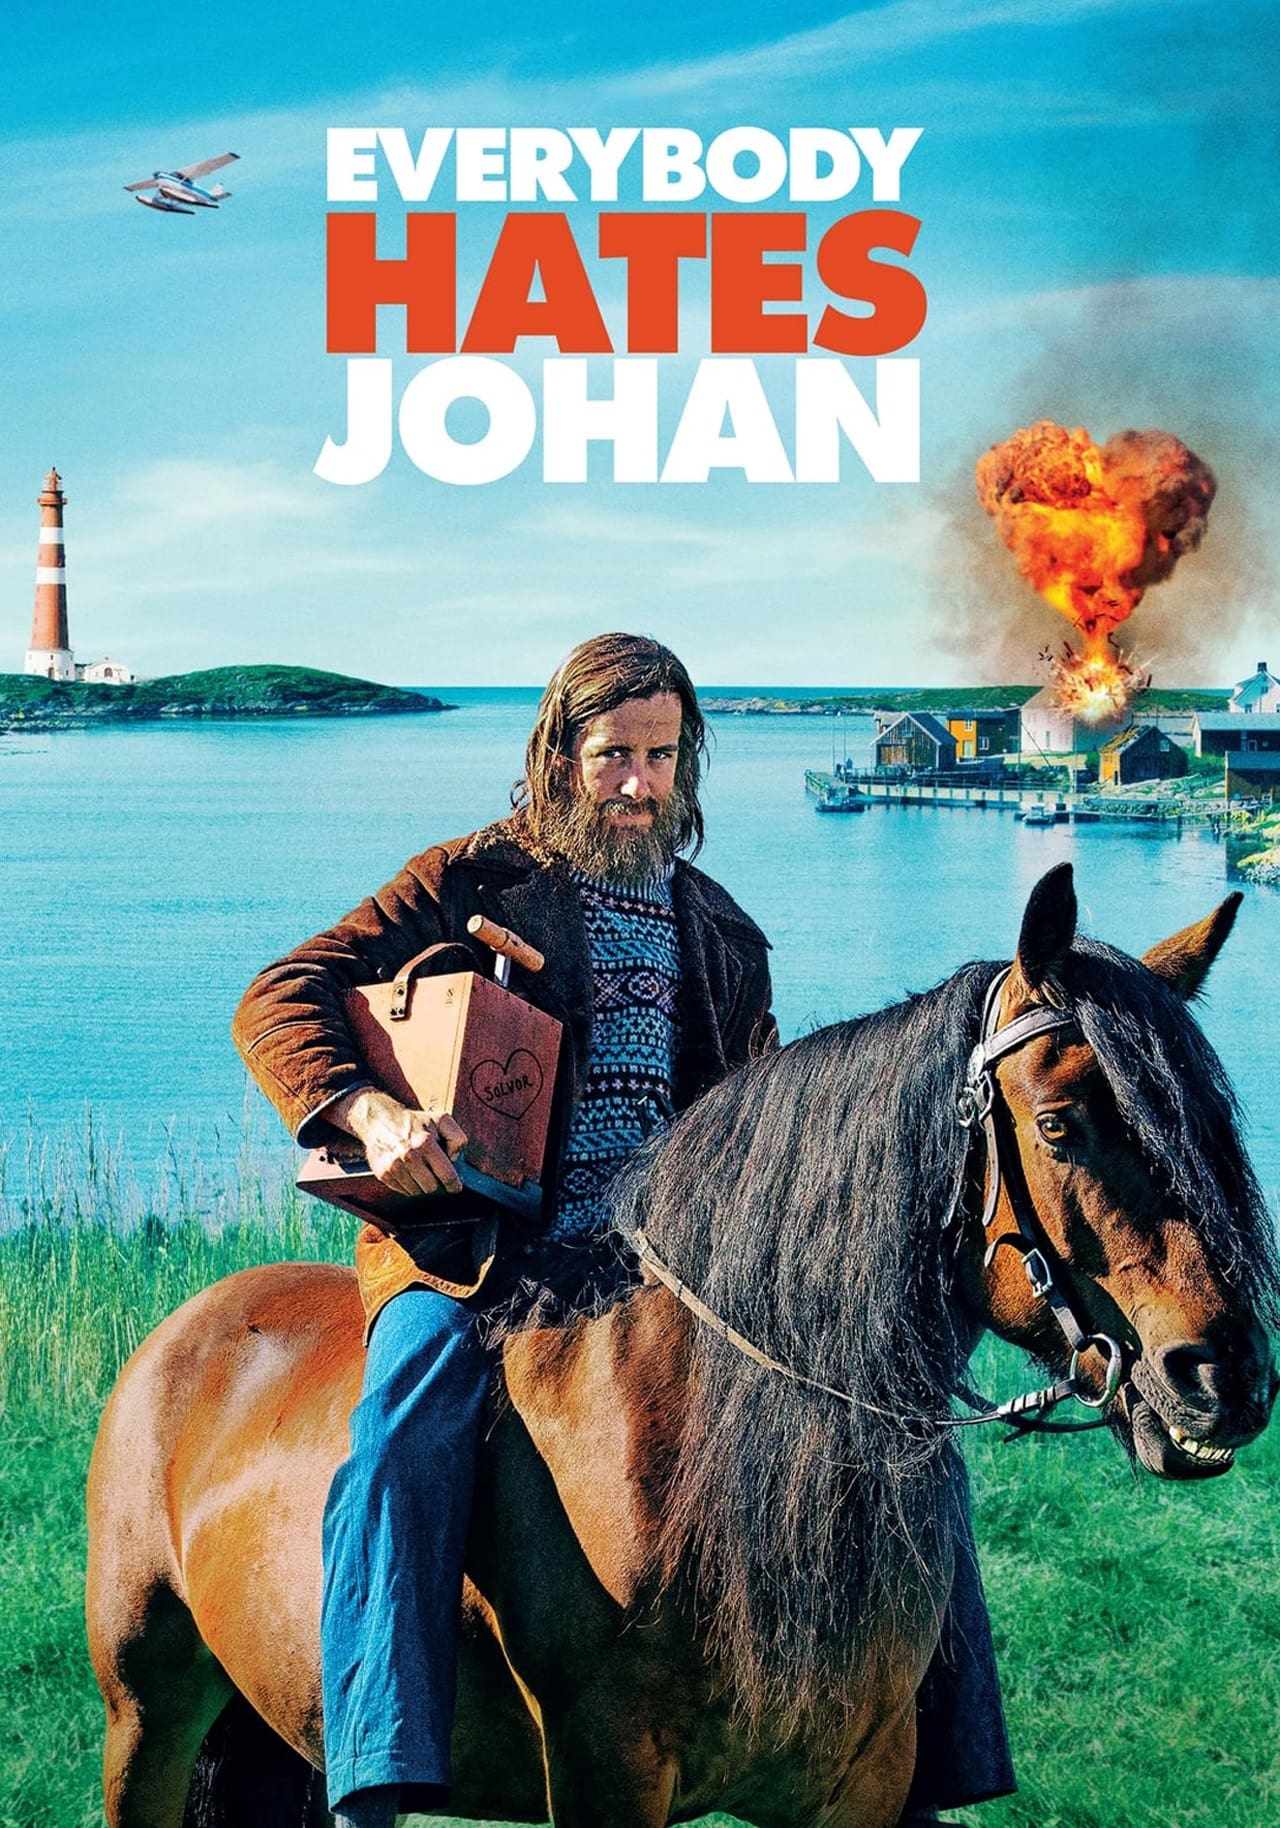 Caratula de Alle hater Johan (Tot el món odia a Johan) 